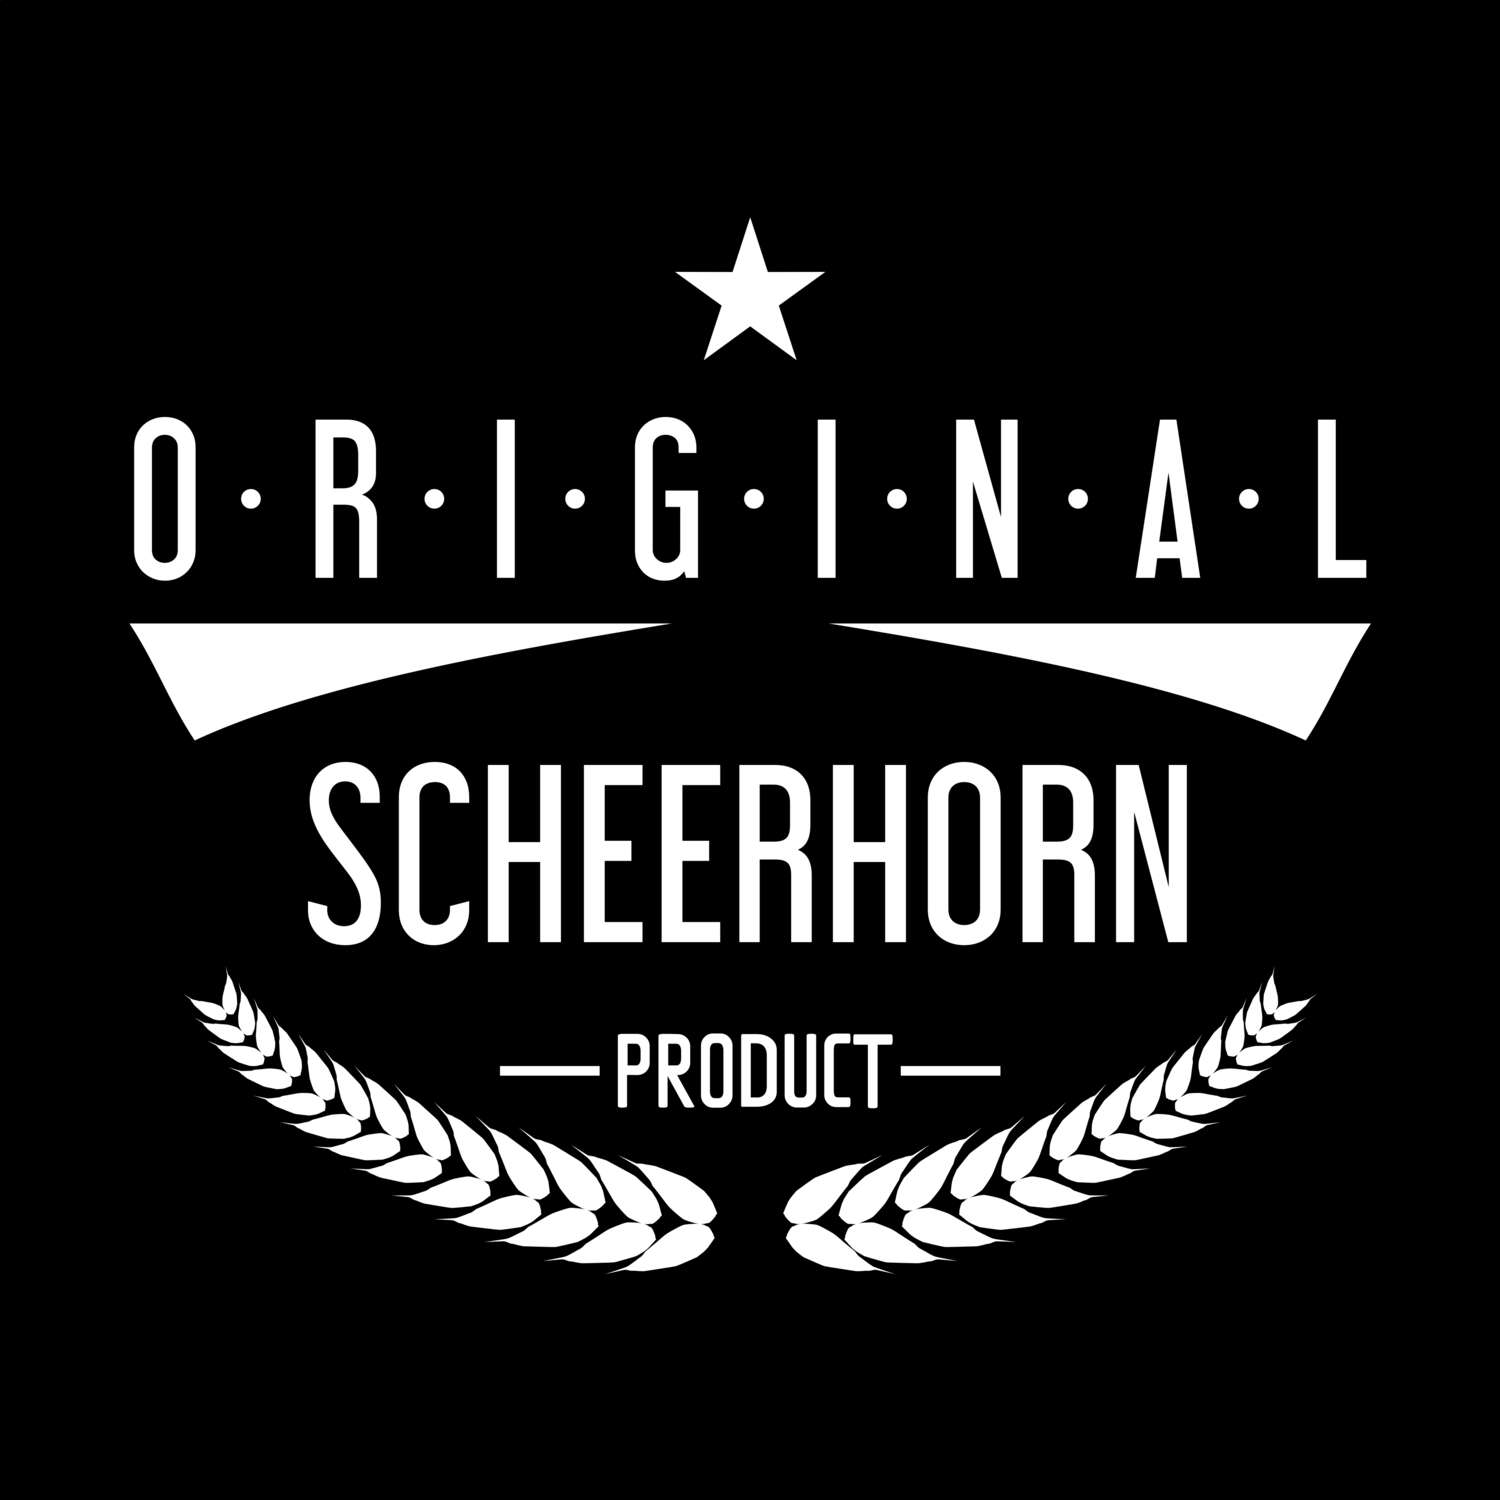 Scheerhorn T-Shirt »Original Product«